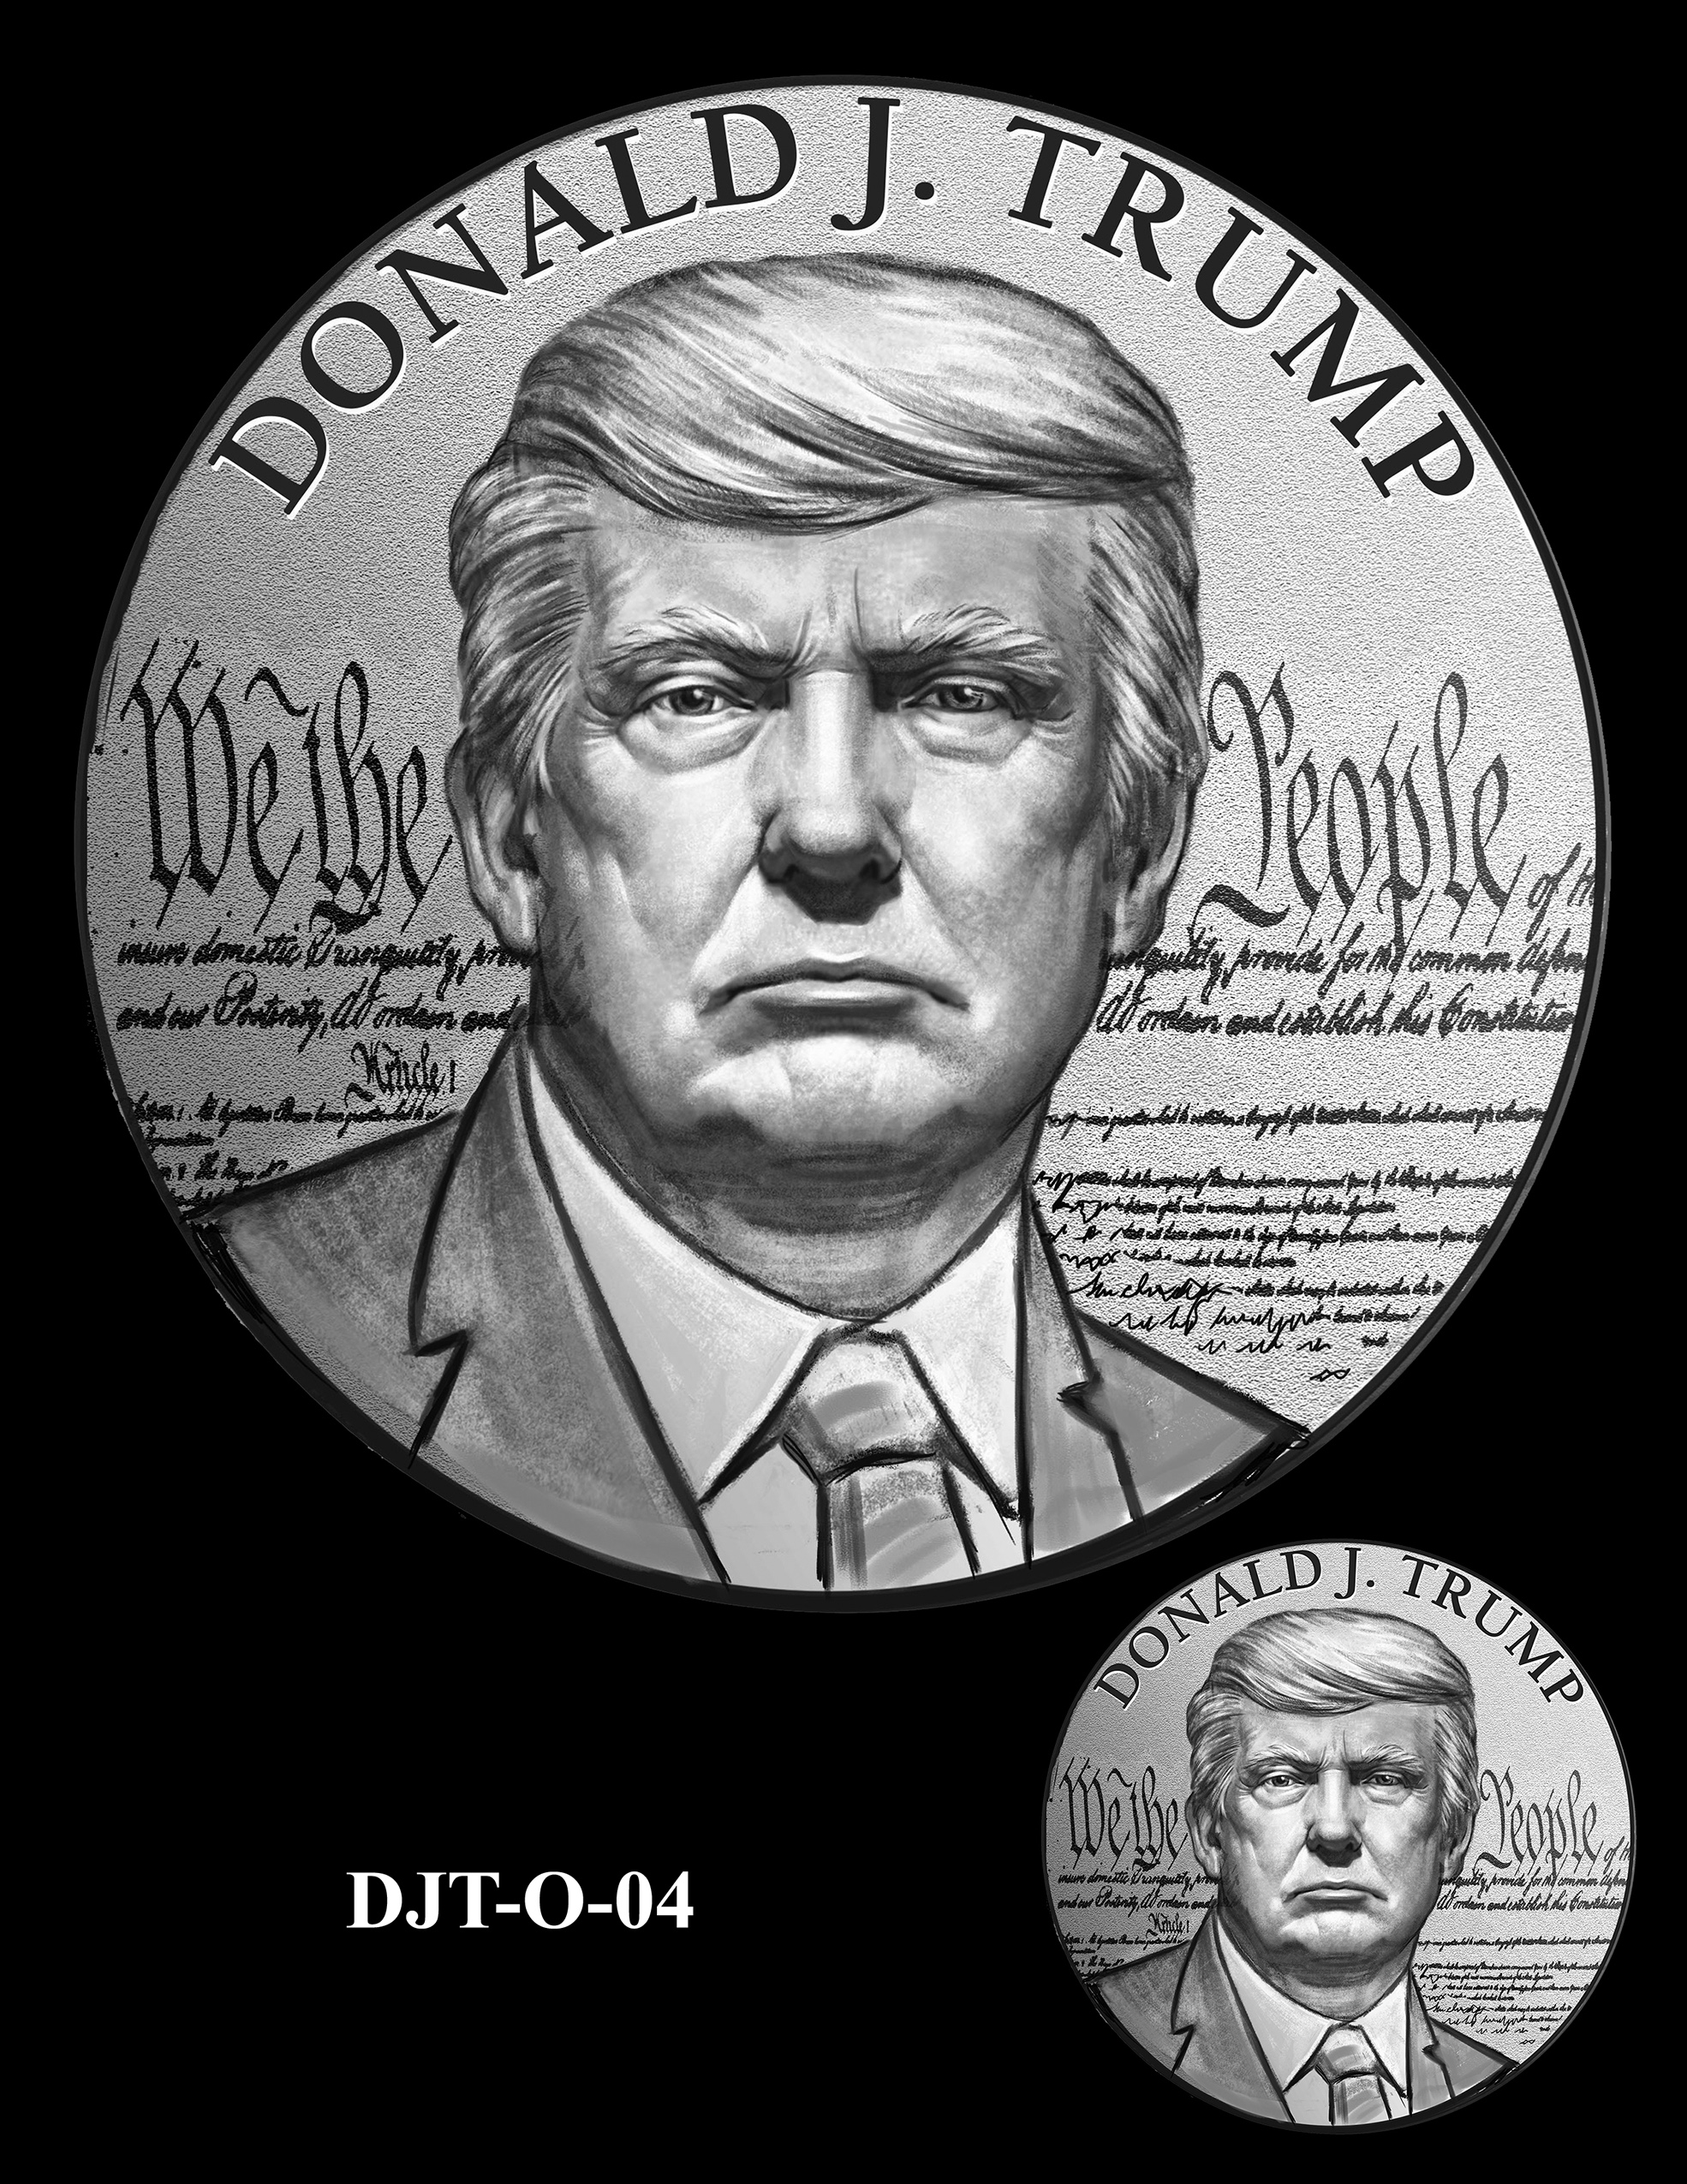 DJT-O-04 -- Donald J. Trump Presidential Medal